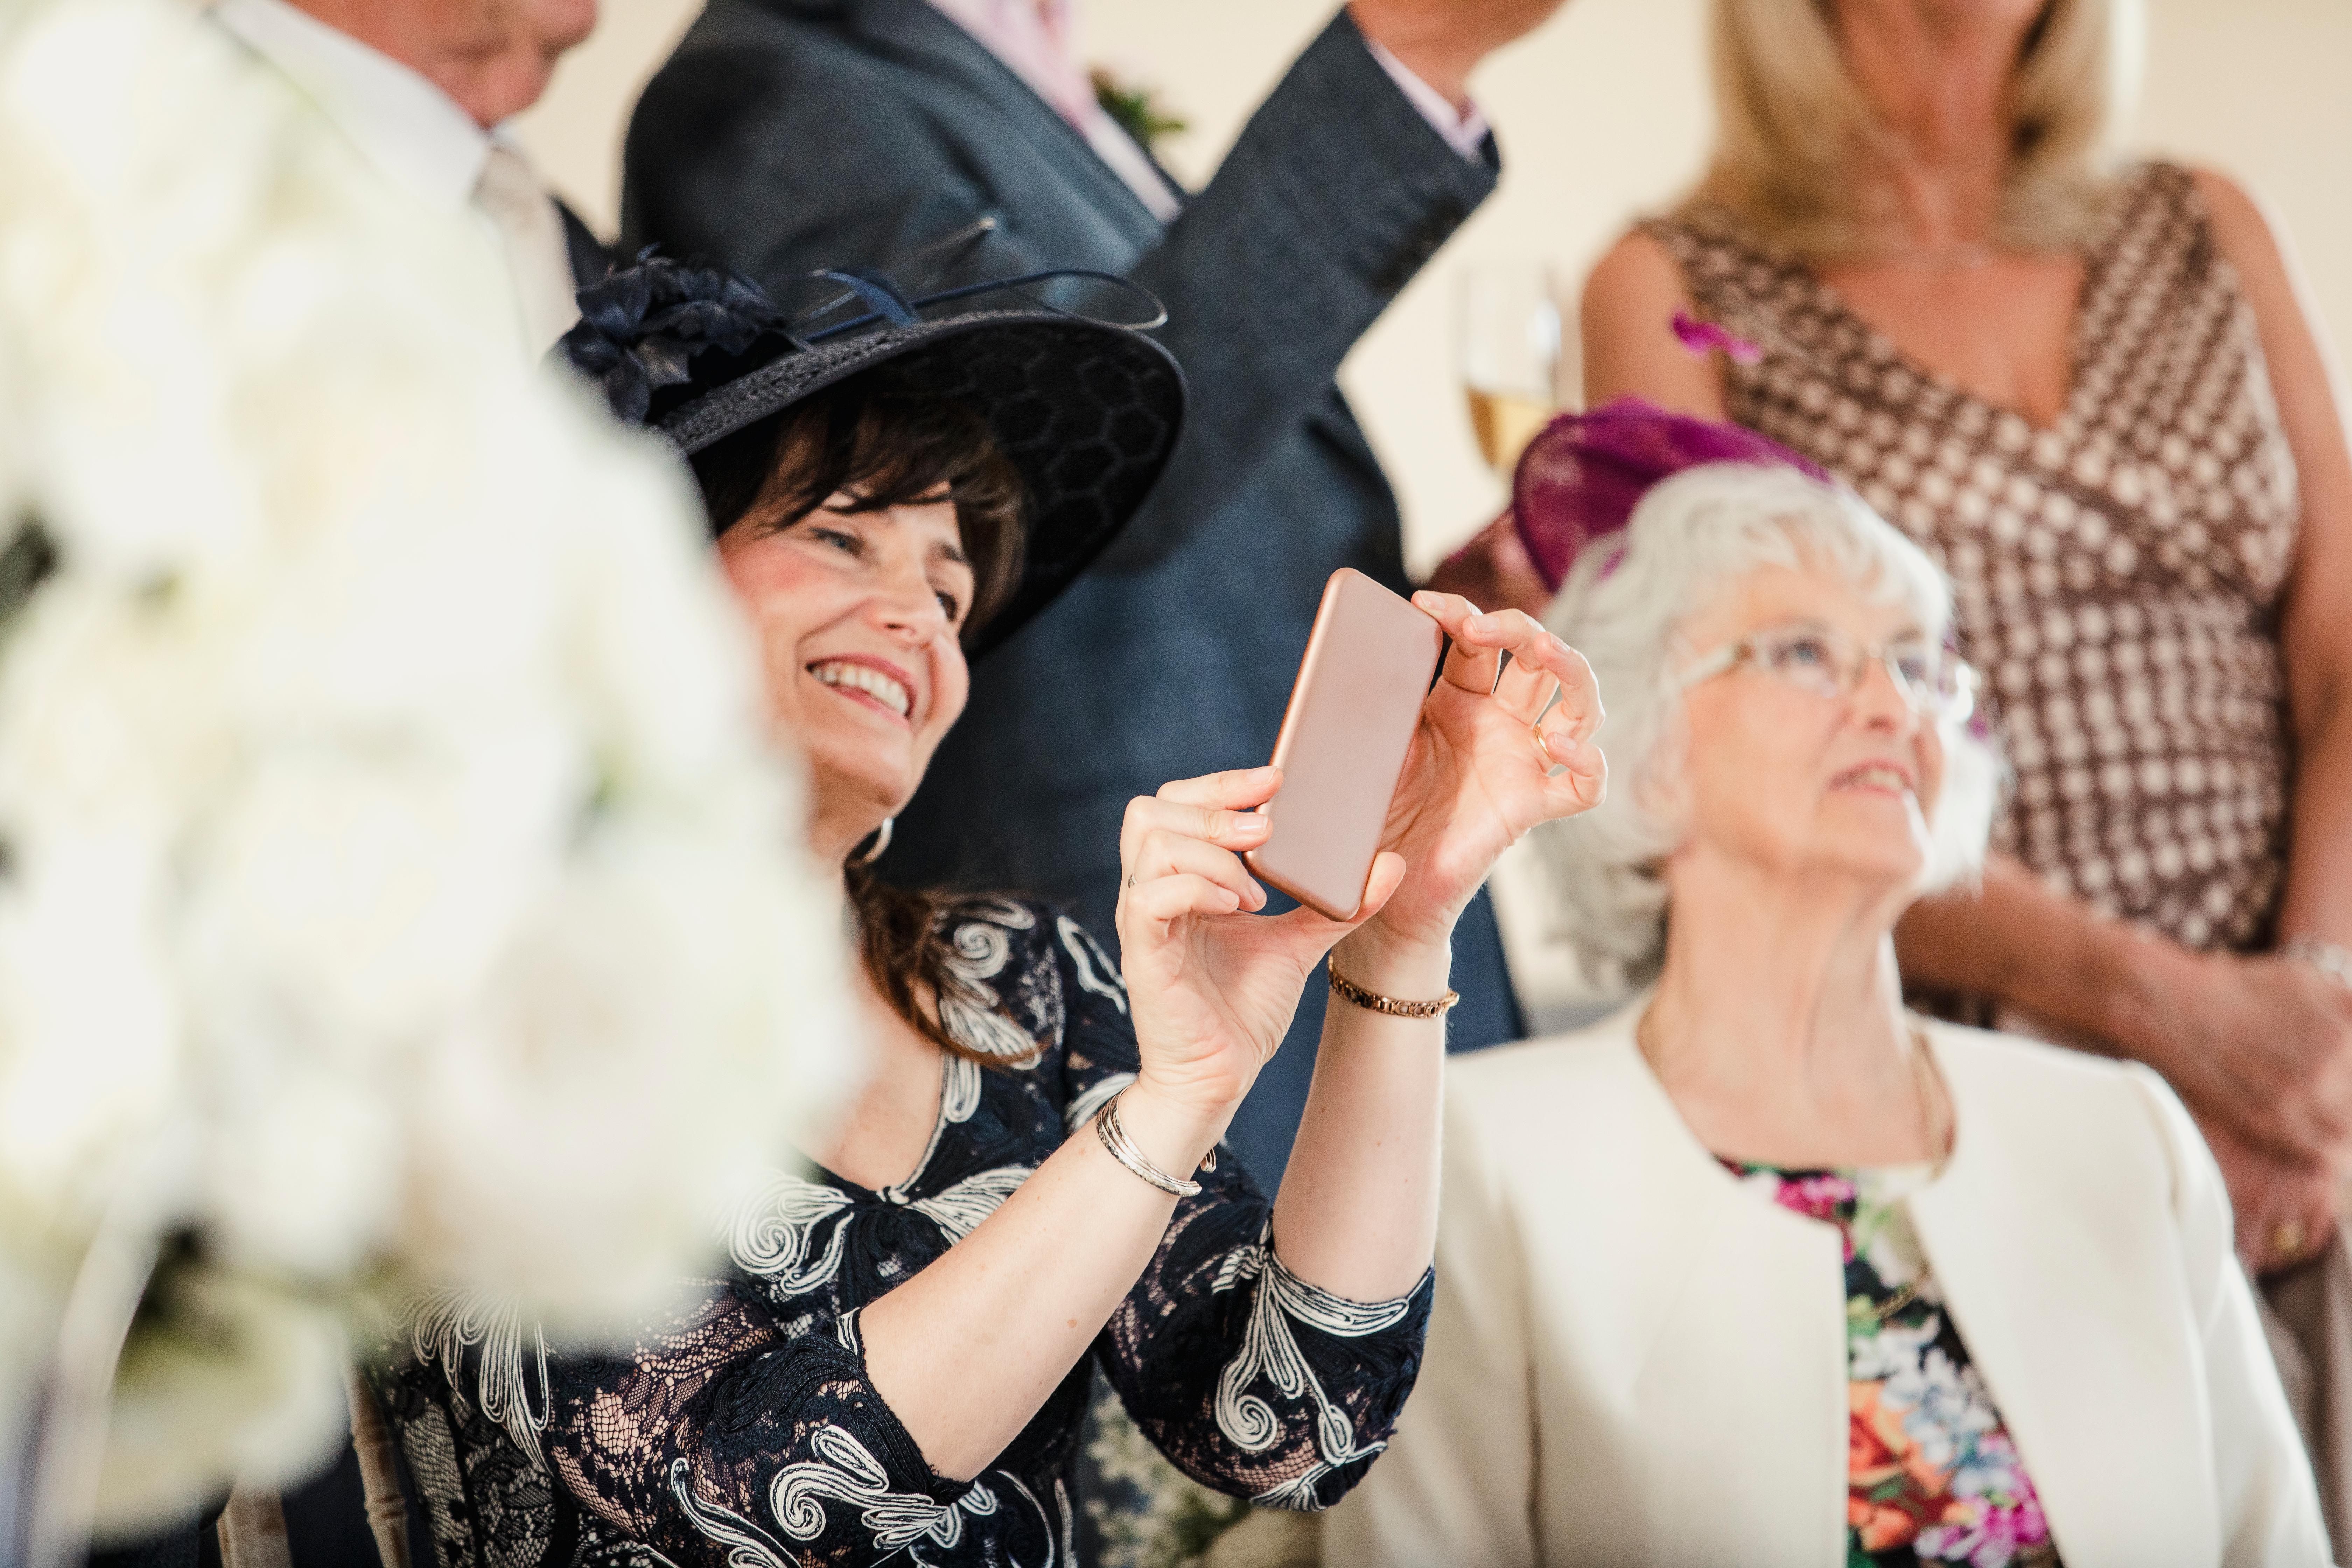 Une femme d'âge moyen est vue tenant un téléphone alors qu'elle est assise à côté d'une dame plus âgée lors d'une cérémonie de mariage | Source : Shutterstock